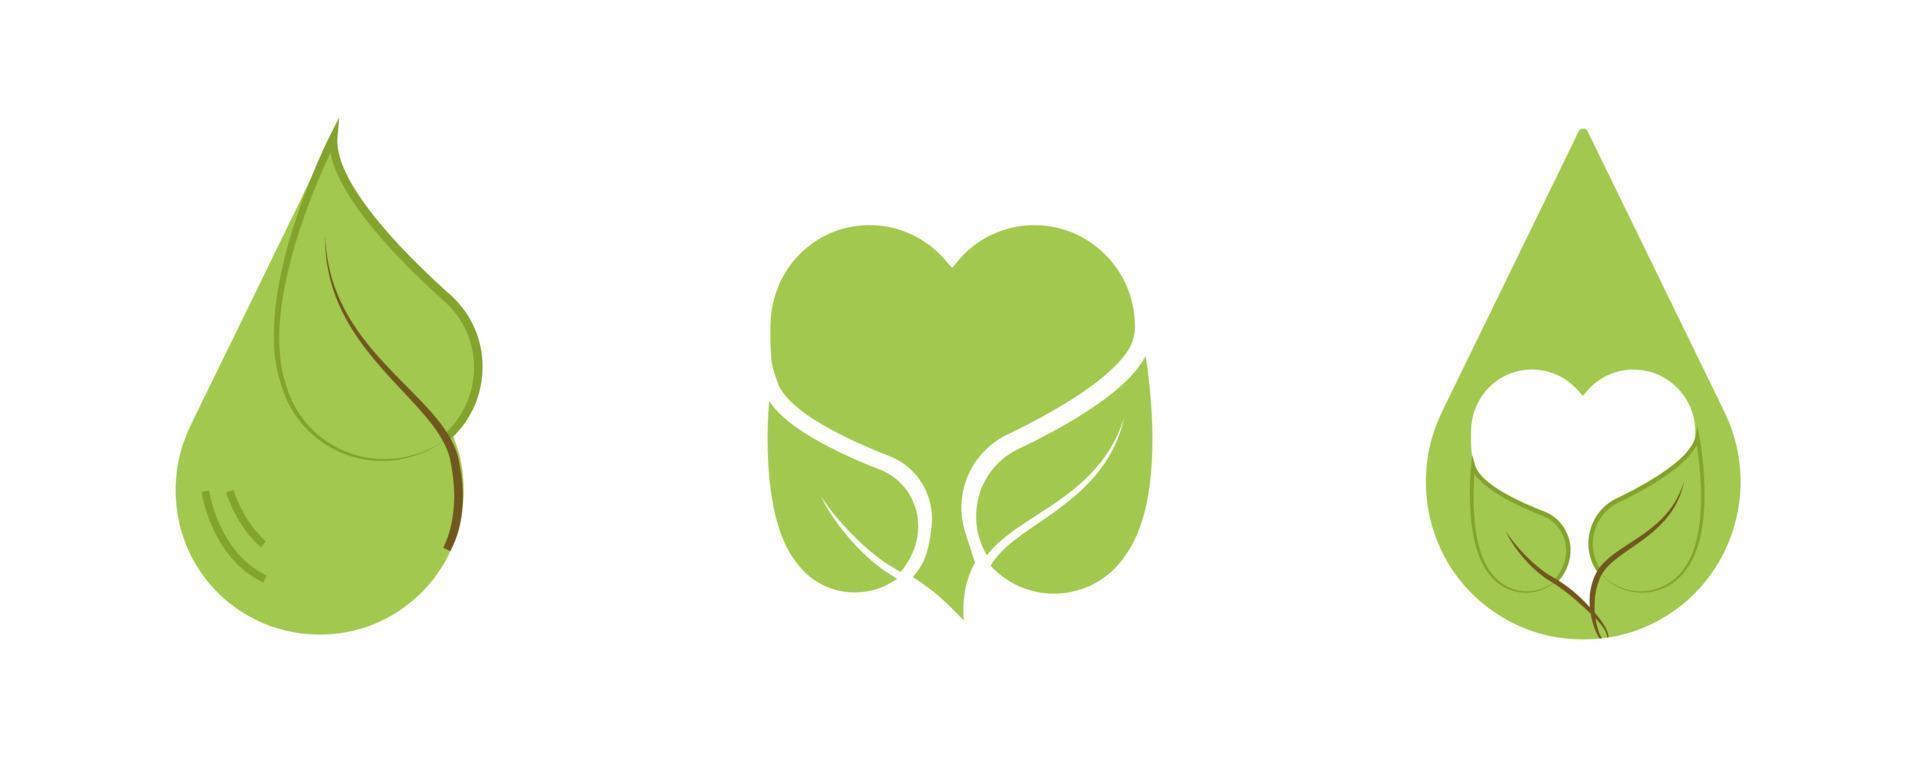 agua creativa, conjunto de iconos de salud del corazón. contiene símbolos como hoja moderna, gota de agua, corazón. diseño de logotipo de estilo de vida vegano y saludable. trazo editable. conjunto de iconos en color verde. vector